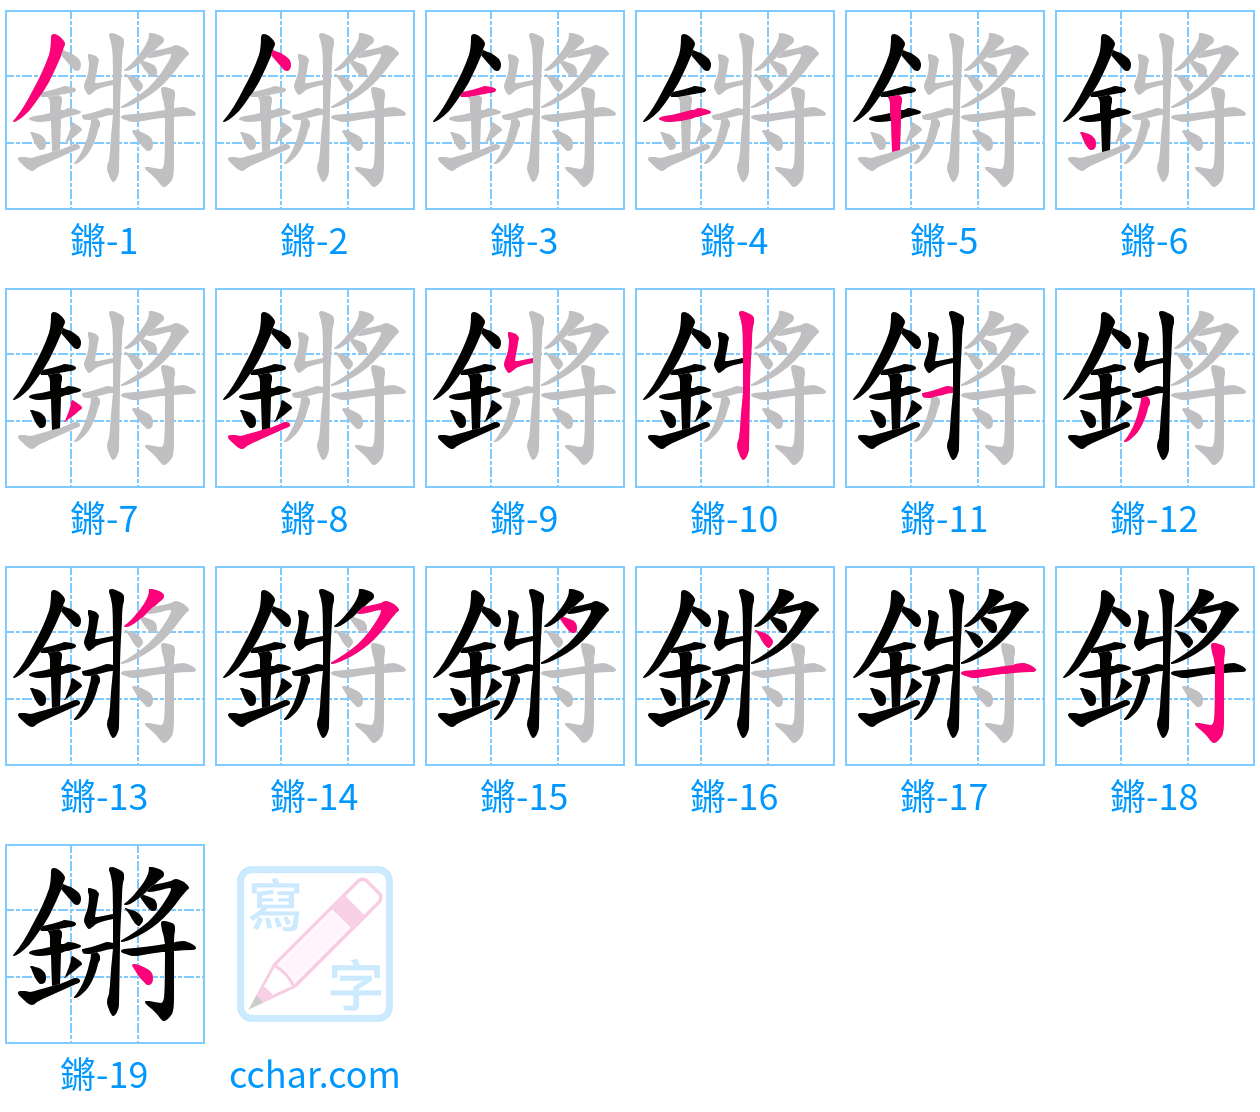 鏘 stroke order step-by-step diagram